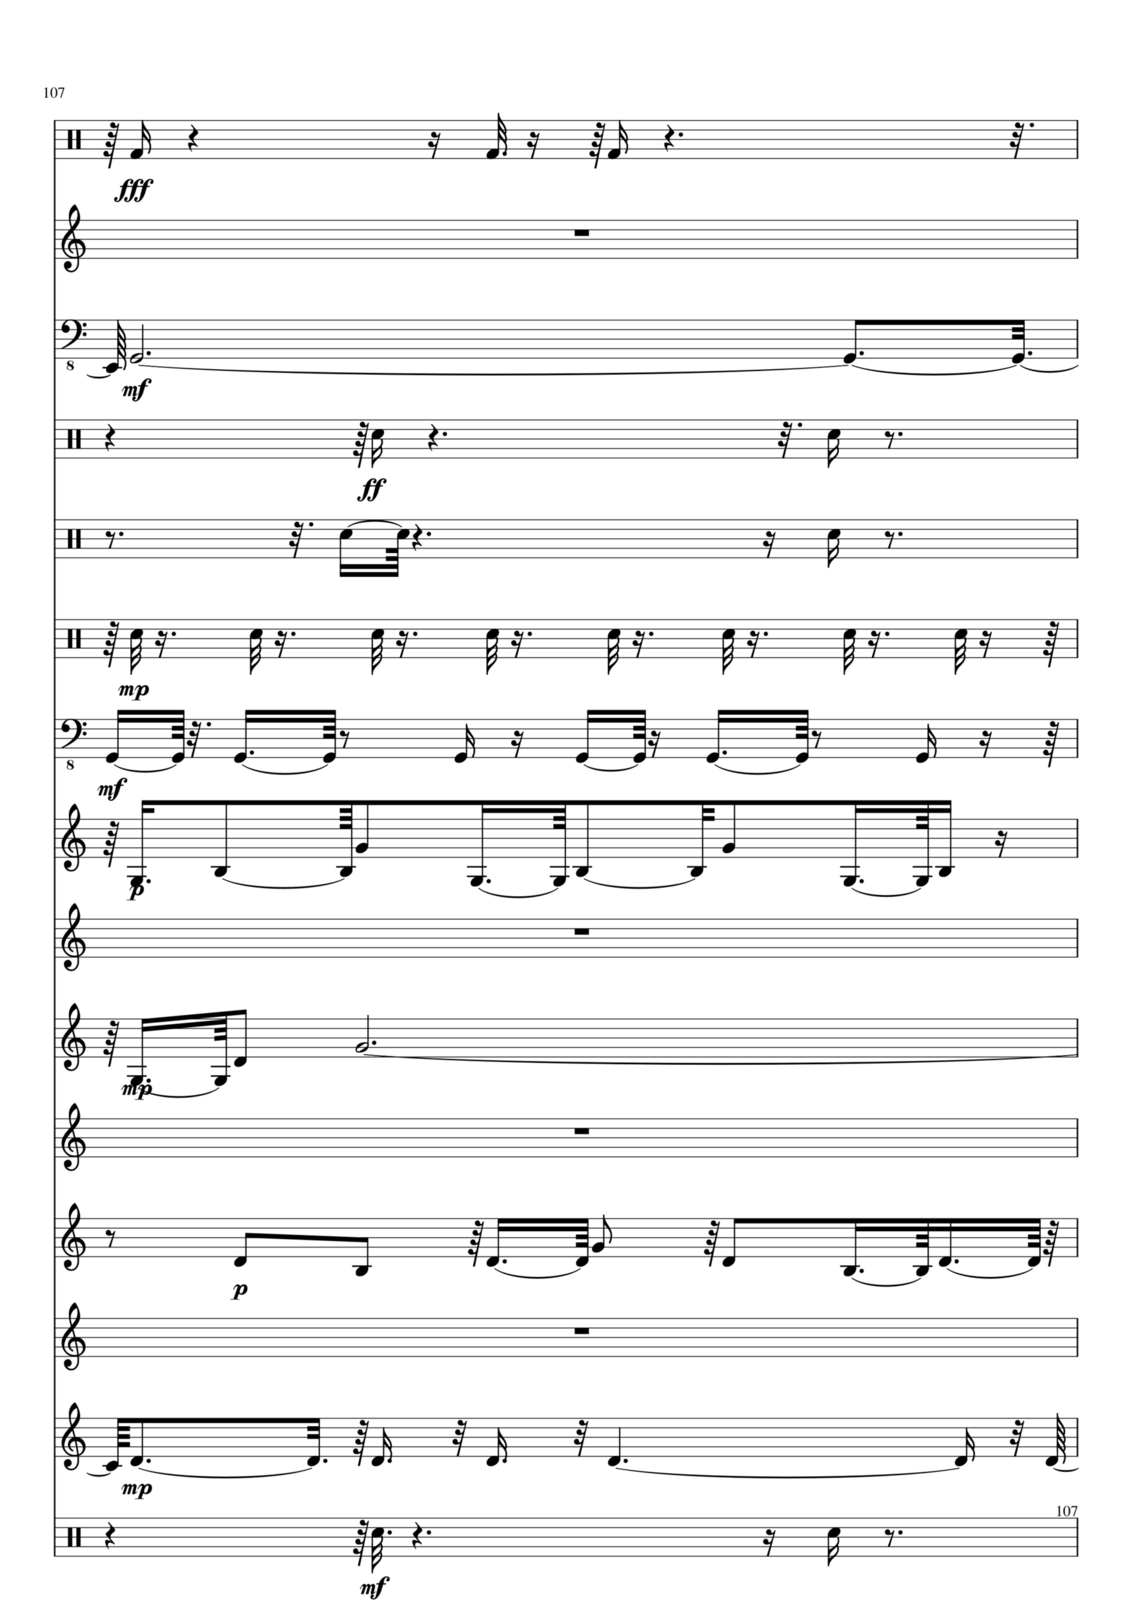 Utro polinyi slide, Image 107